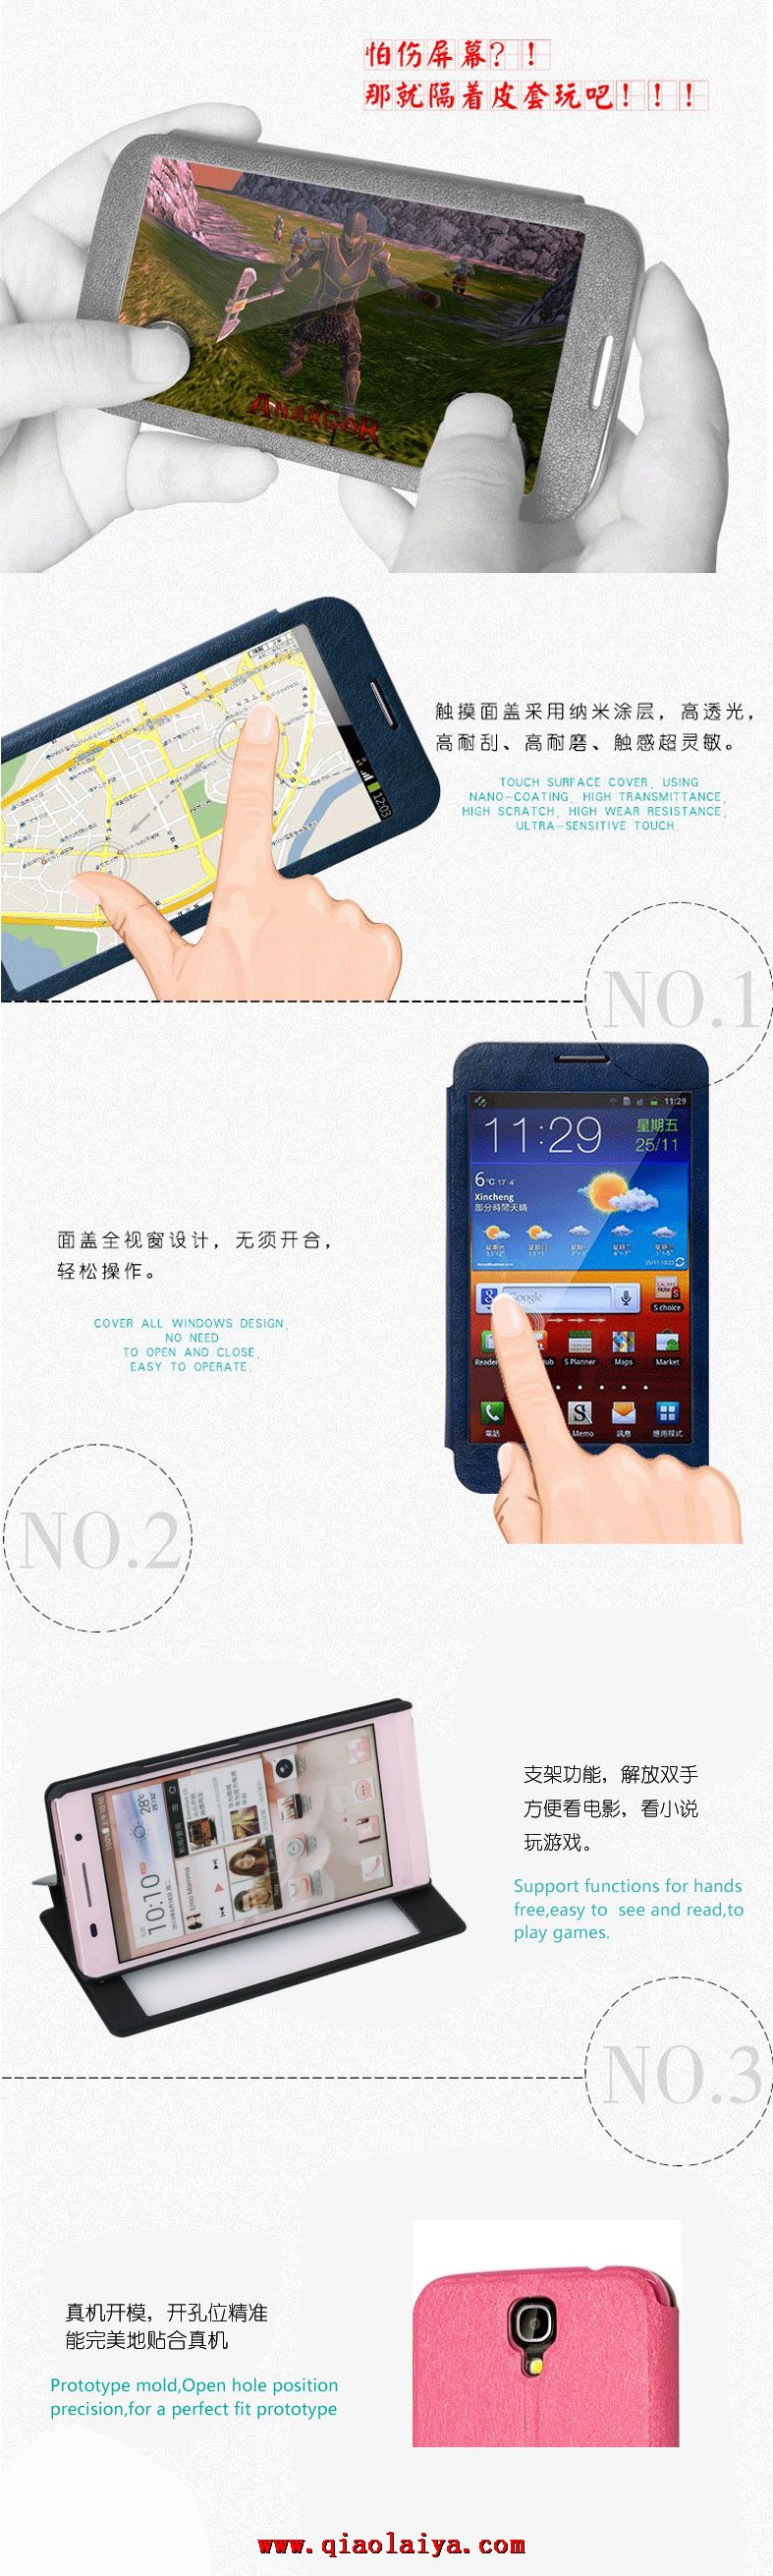 Rose Samsung i9205 téléphone coque toute la fenêtre Galaxy Mega 6.3 étui en cuir